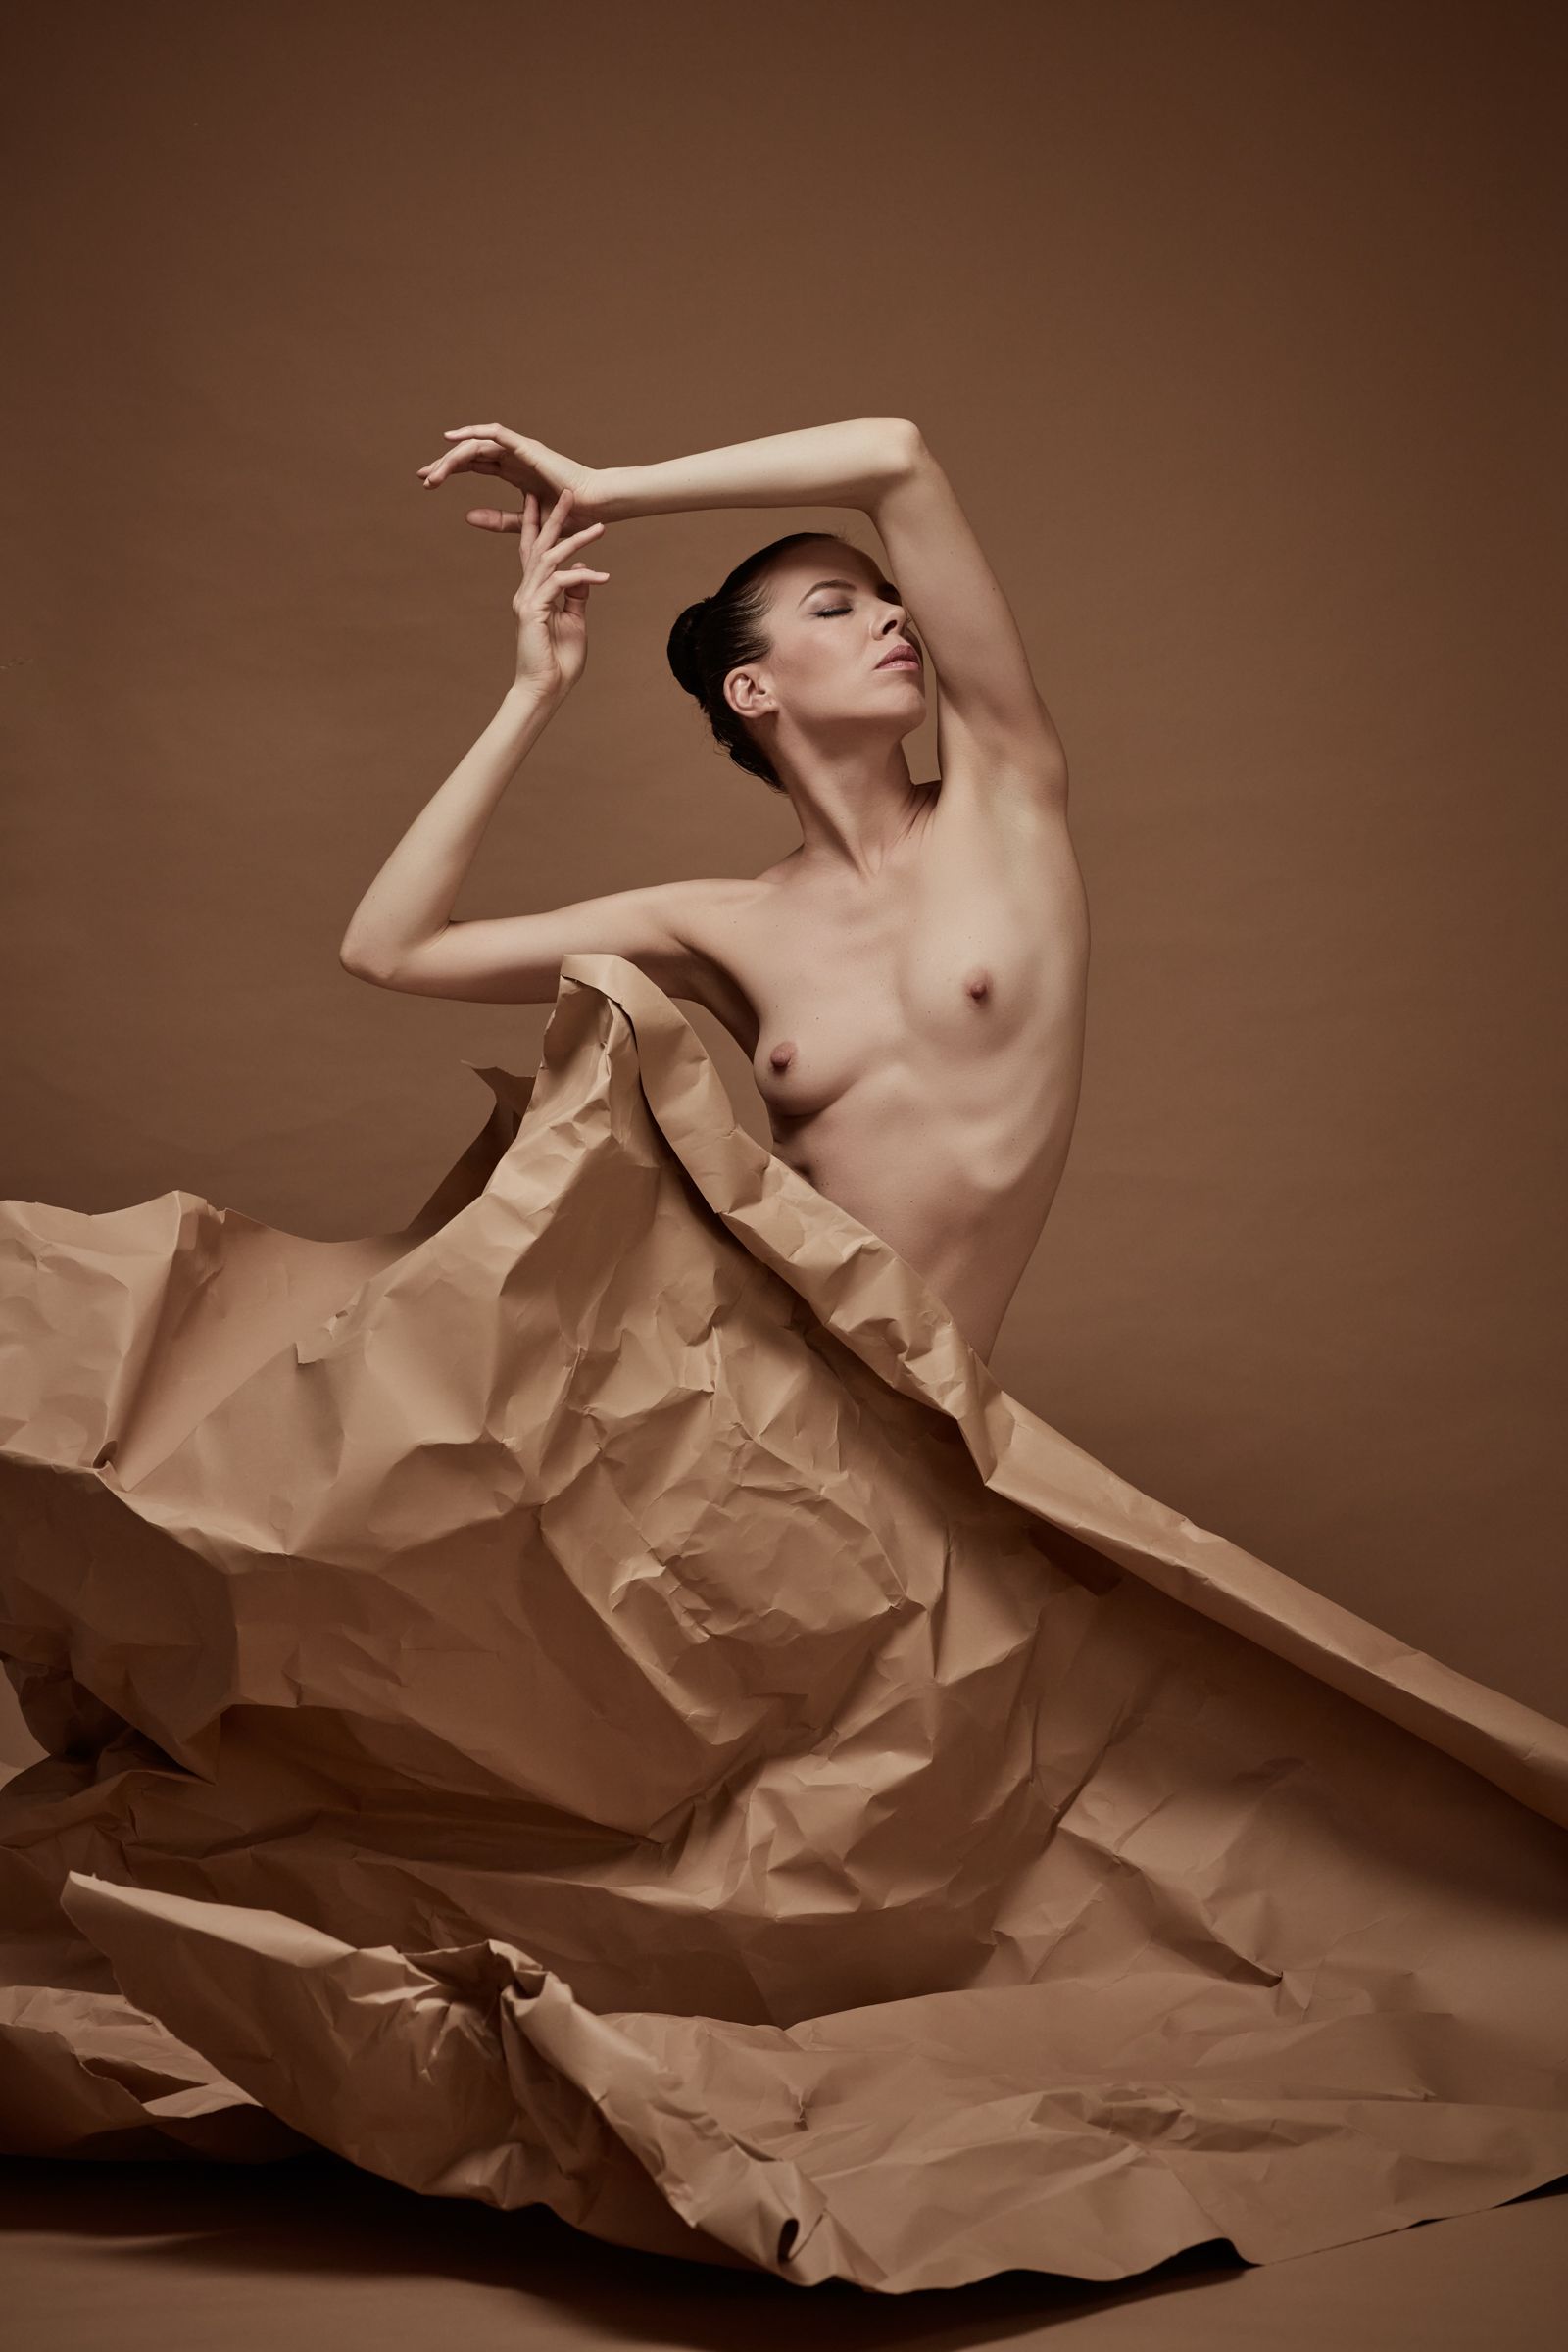 denisa sculptural art nude in studio mainz 03